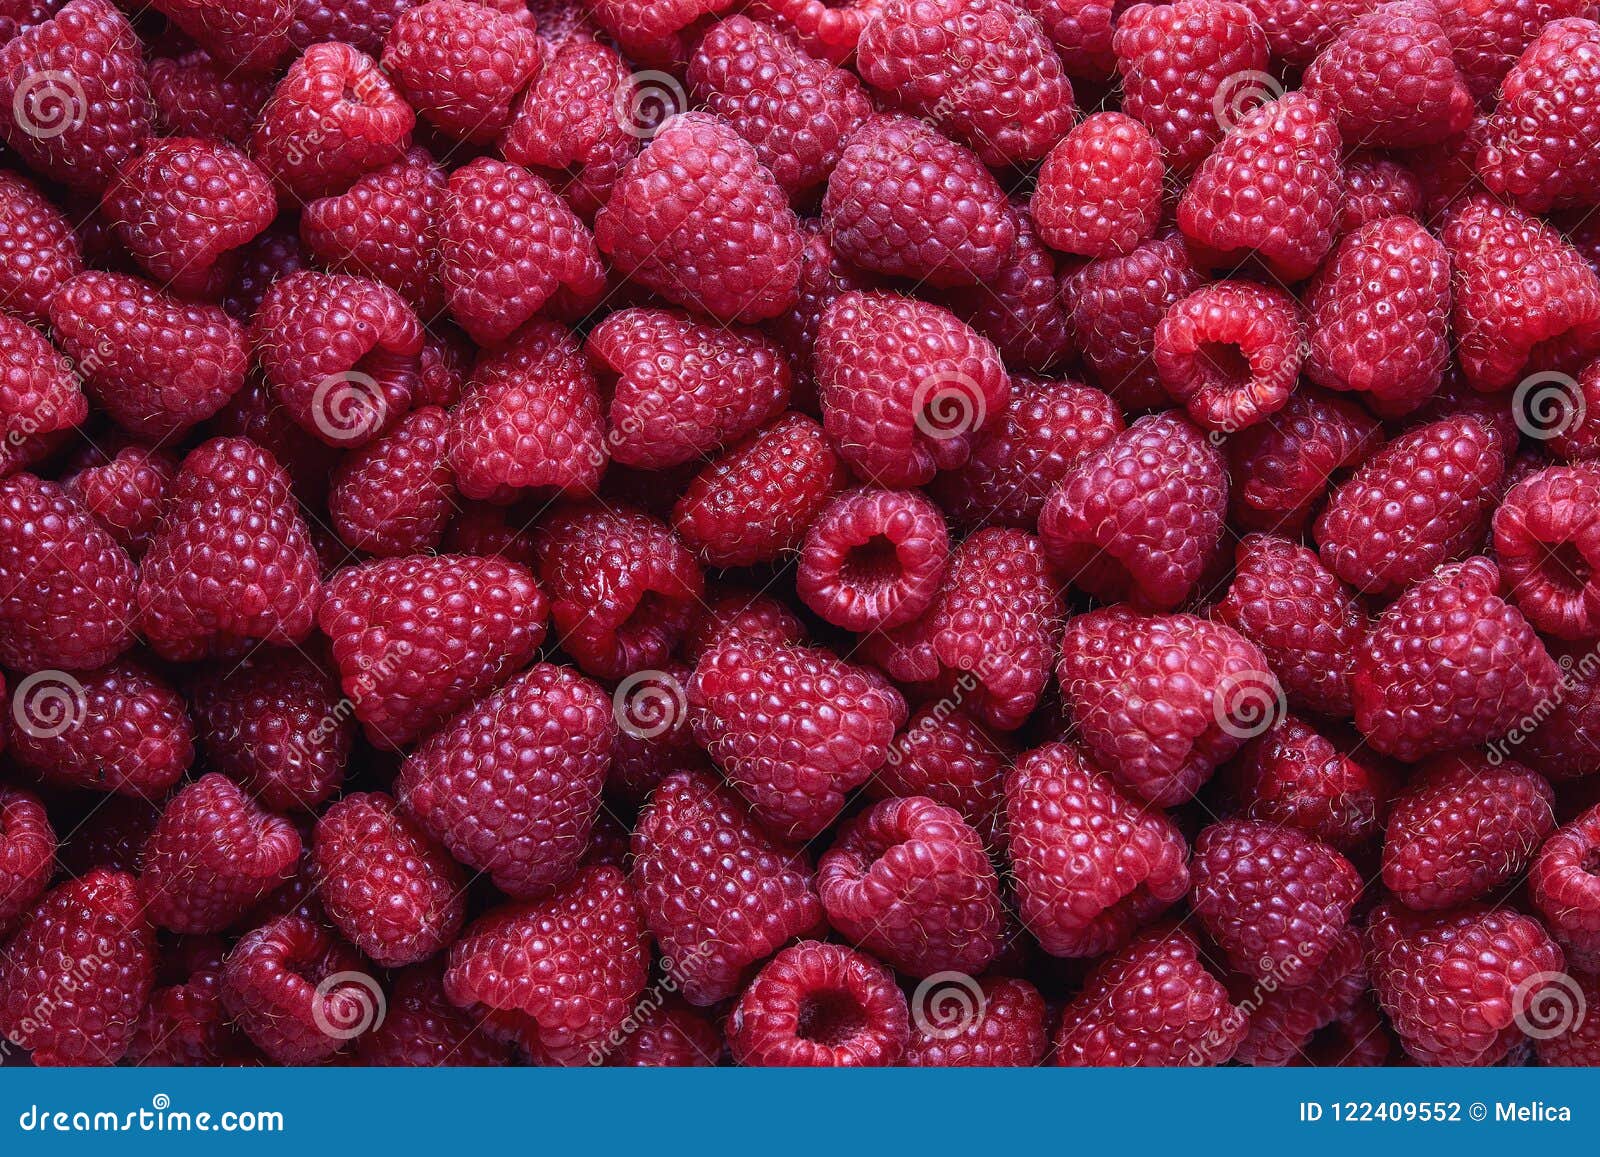 full frame shot of raspberries.